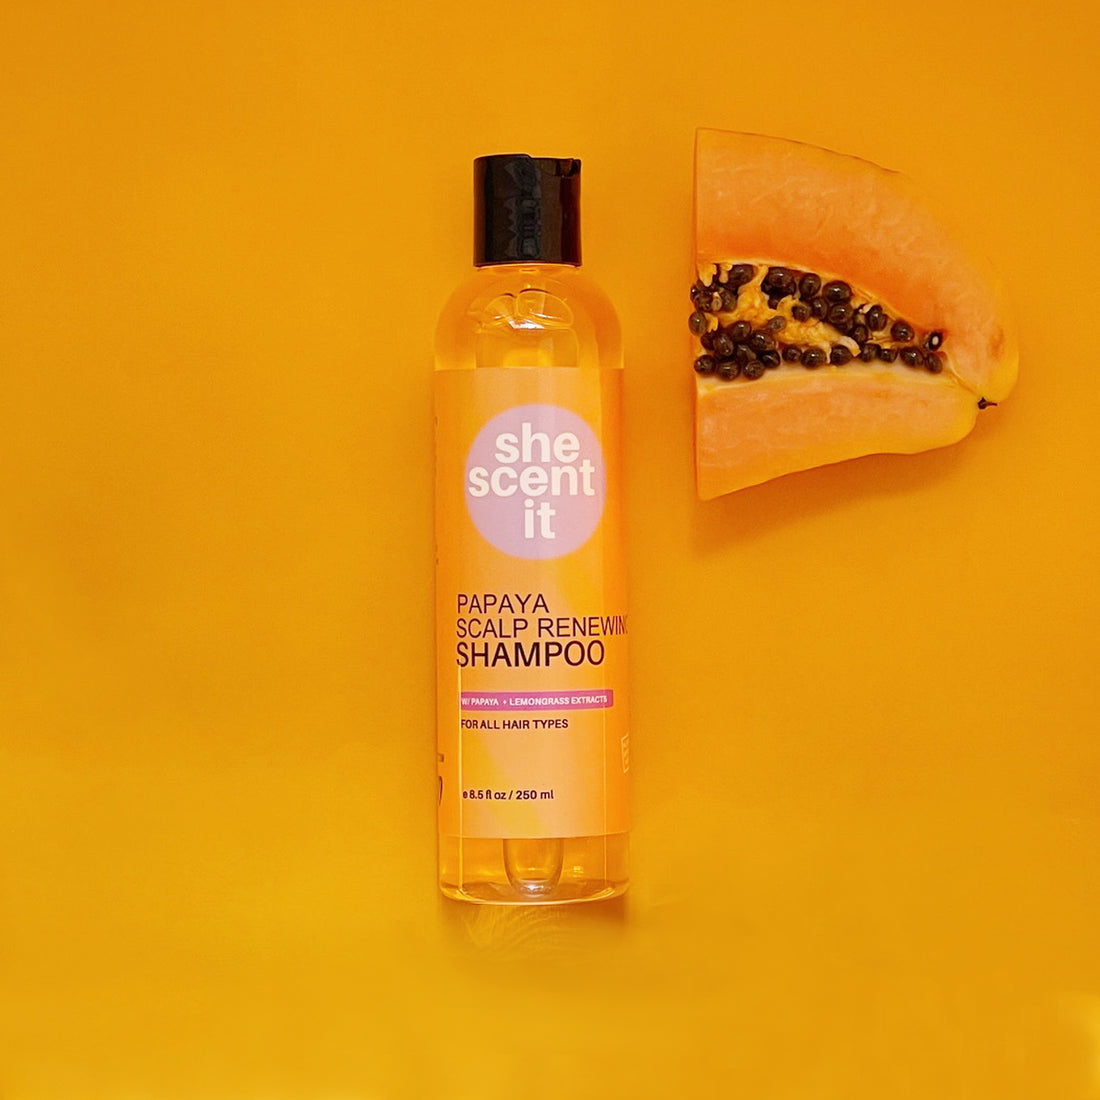 Papaya Scalp Renewing Shampoo